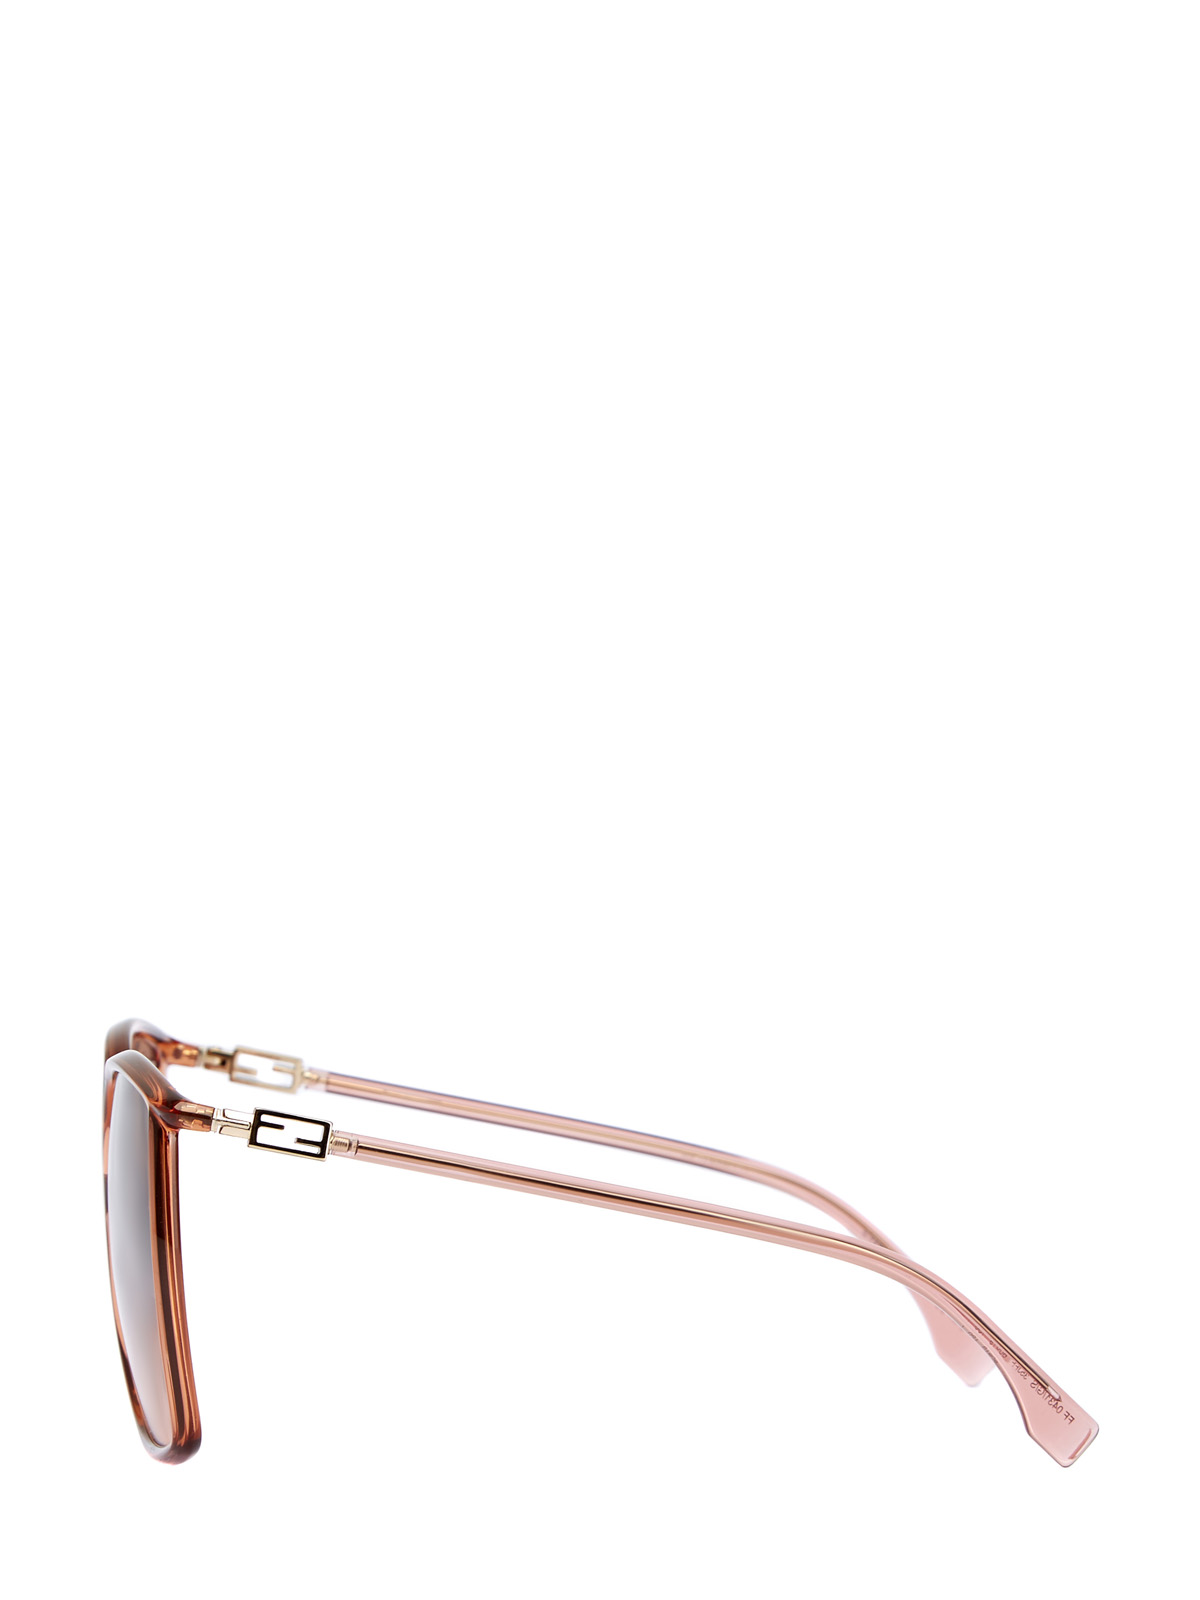 Oversize-очки в легкой оправе с логотипом FF на дужках FENDI (sunglasses), цвет мульти, размер 5;5.5;6;6.5;7;7.5;8;9;10 - фото 4